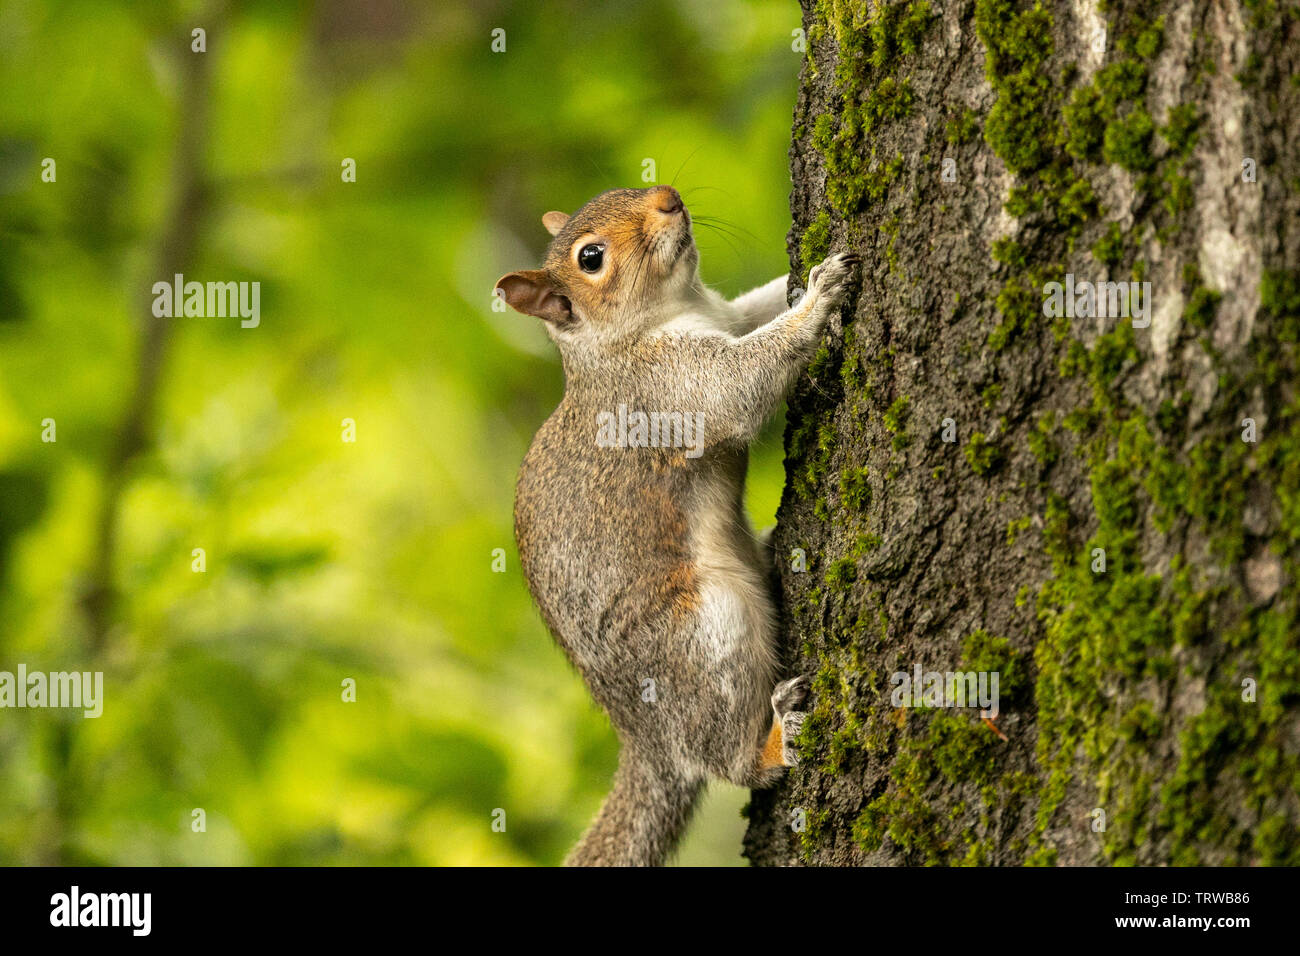 L'écureuil gris (Sciurus carolinensis) - vue en gros dans un environnement boisé naturel signalant la présence d'animaux caractéristiques. Birmingham, UK Banque D'Images